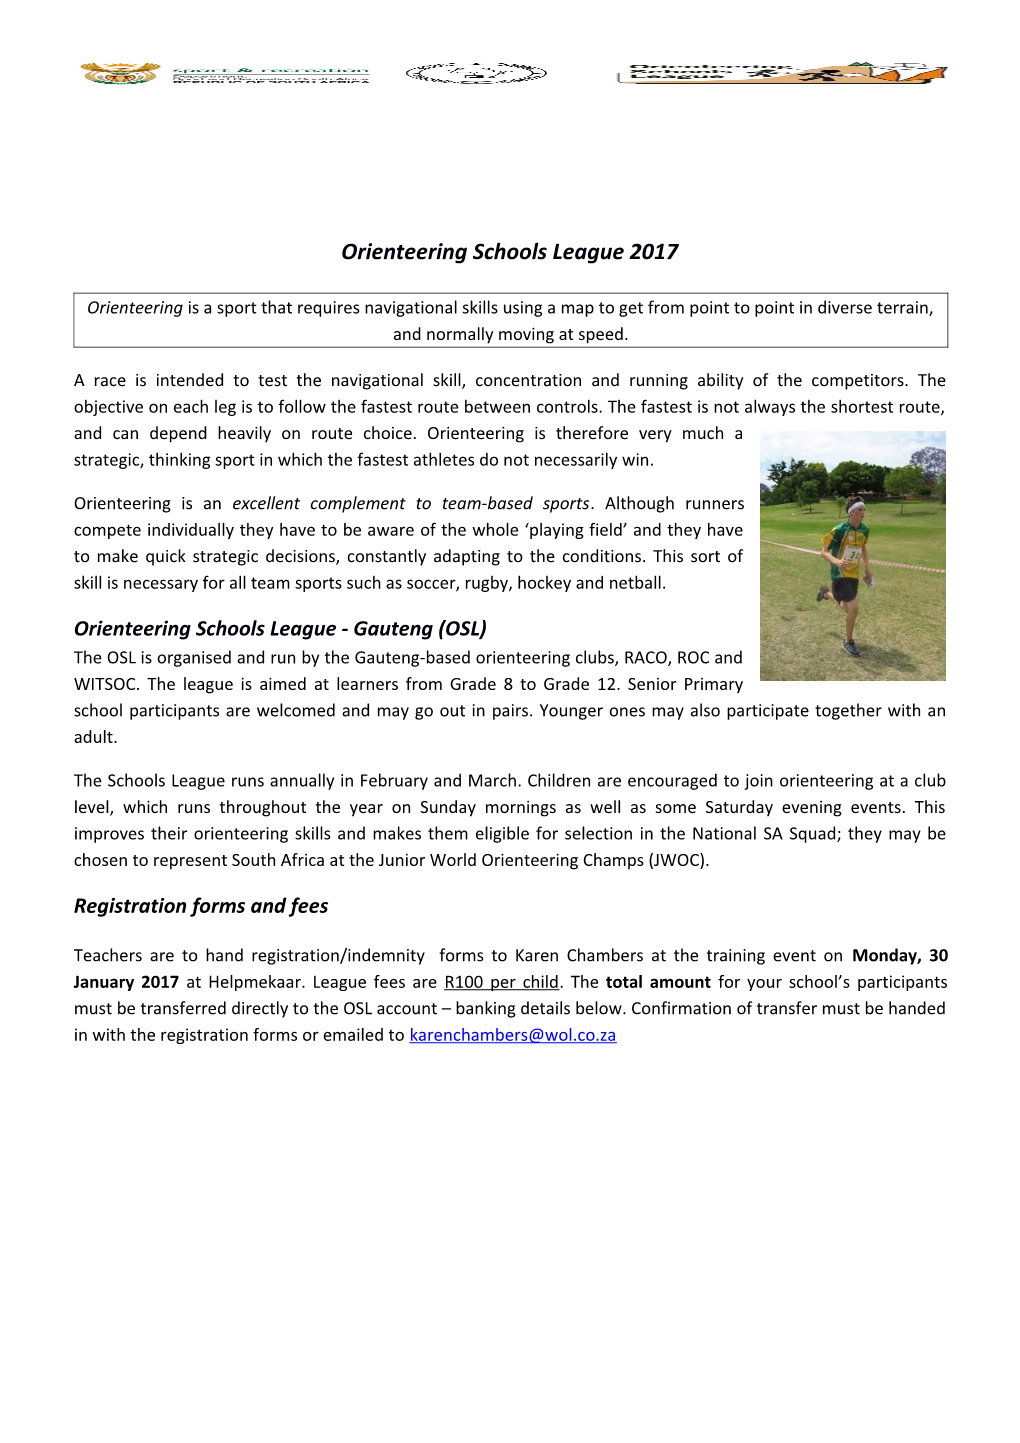 Gauteng Orienteering Schools League (GSL)